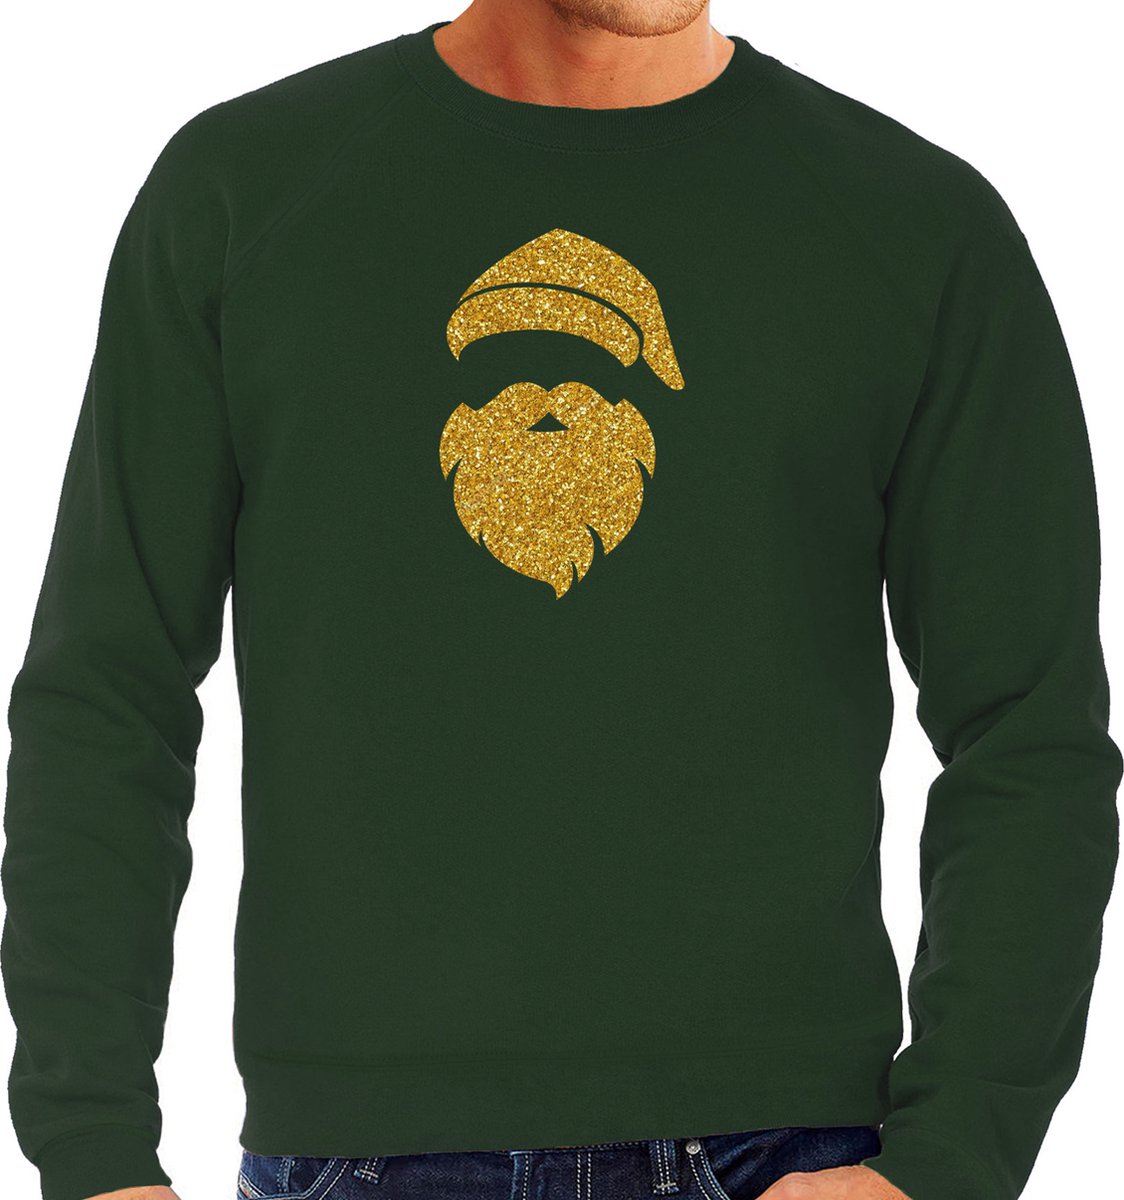 Kerstman hoofd Kerst trui - groen met gouden glitter bedrukking - heren - Kerst sweaters / Kerst outfit M